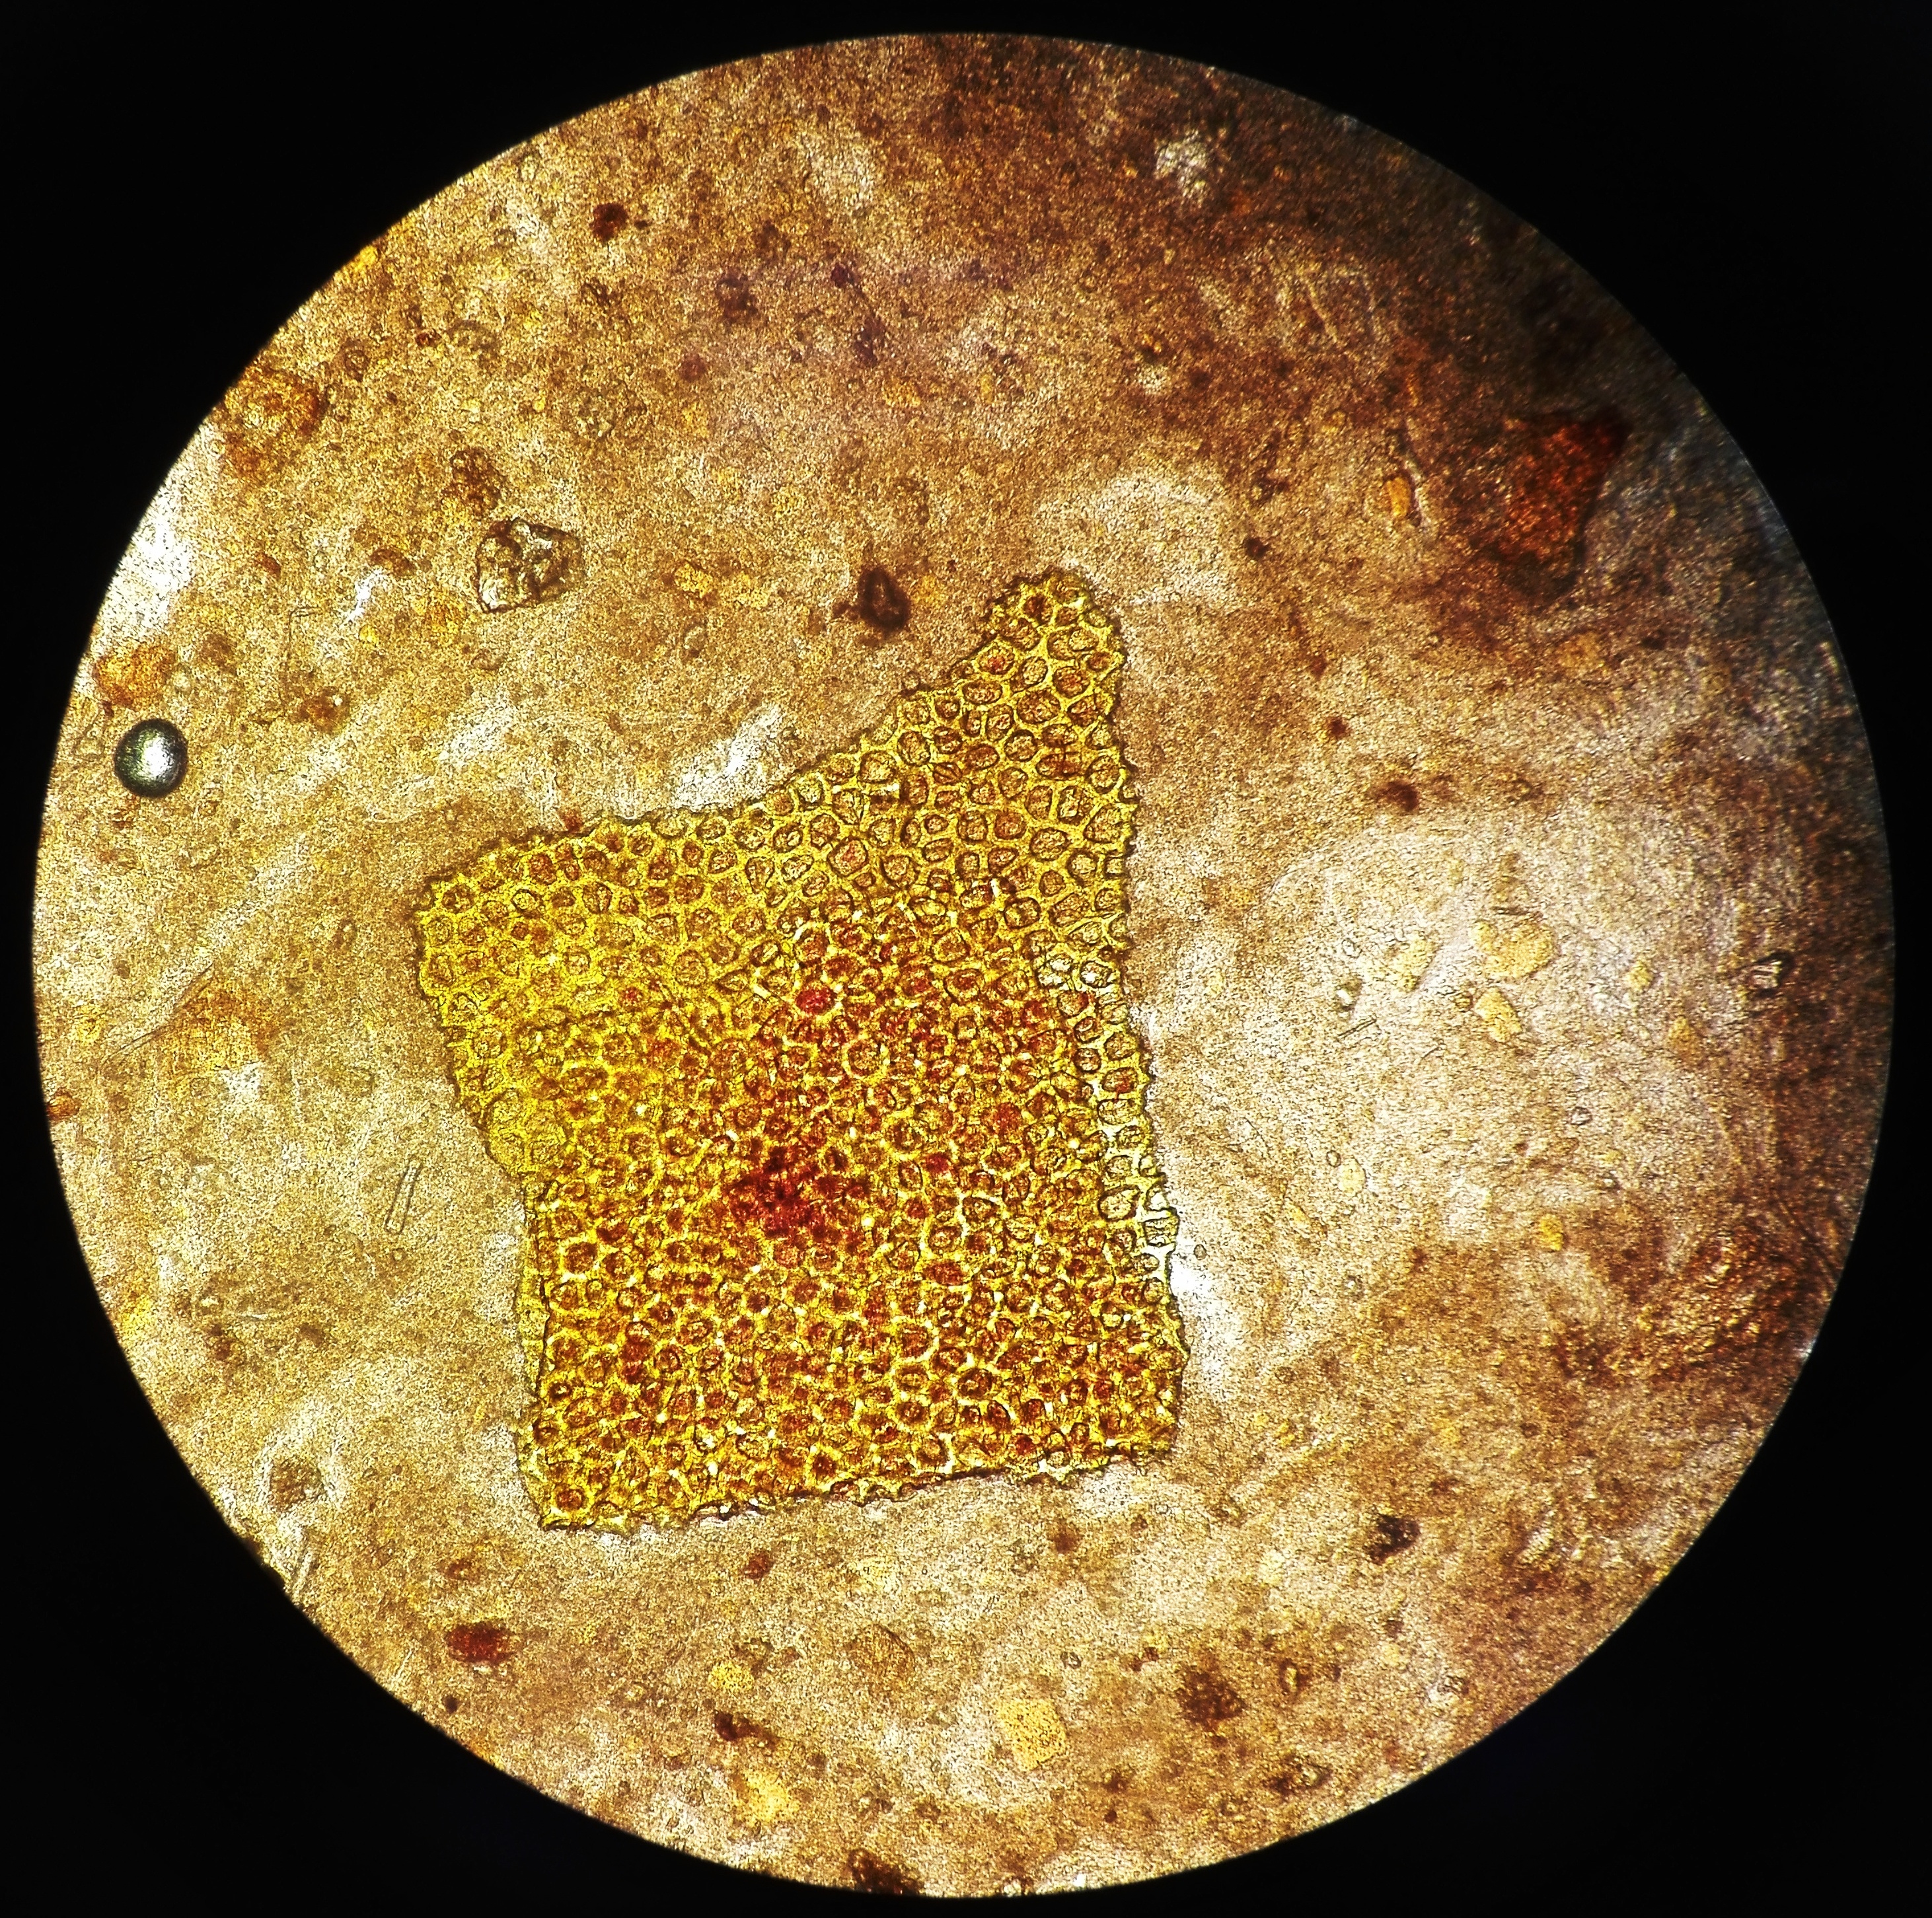 Растительная клетчатка непереваримая. Микроскопия кала клетчатка. Микроскопия кала переваримая клетчатка. Микроскопия кала растительная клетчатка. Переваренная клетчатка микроскопия.